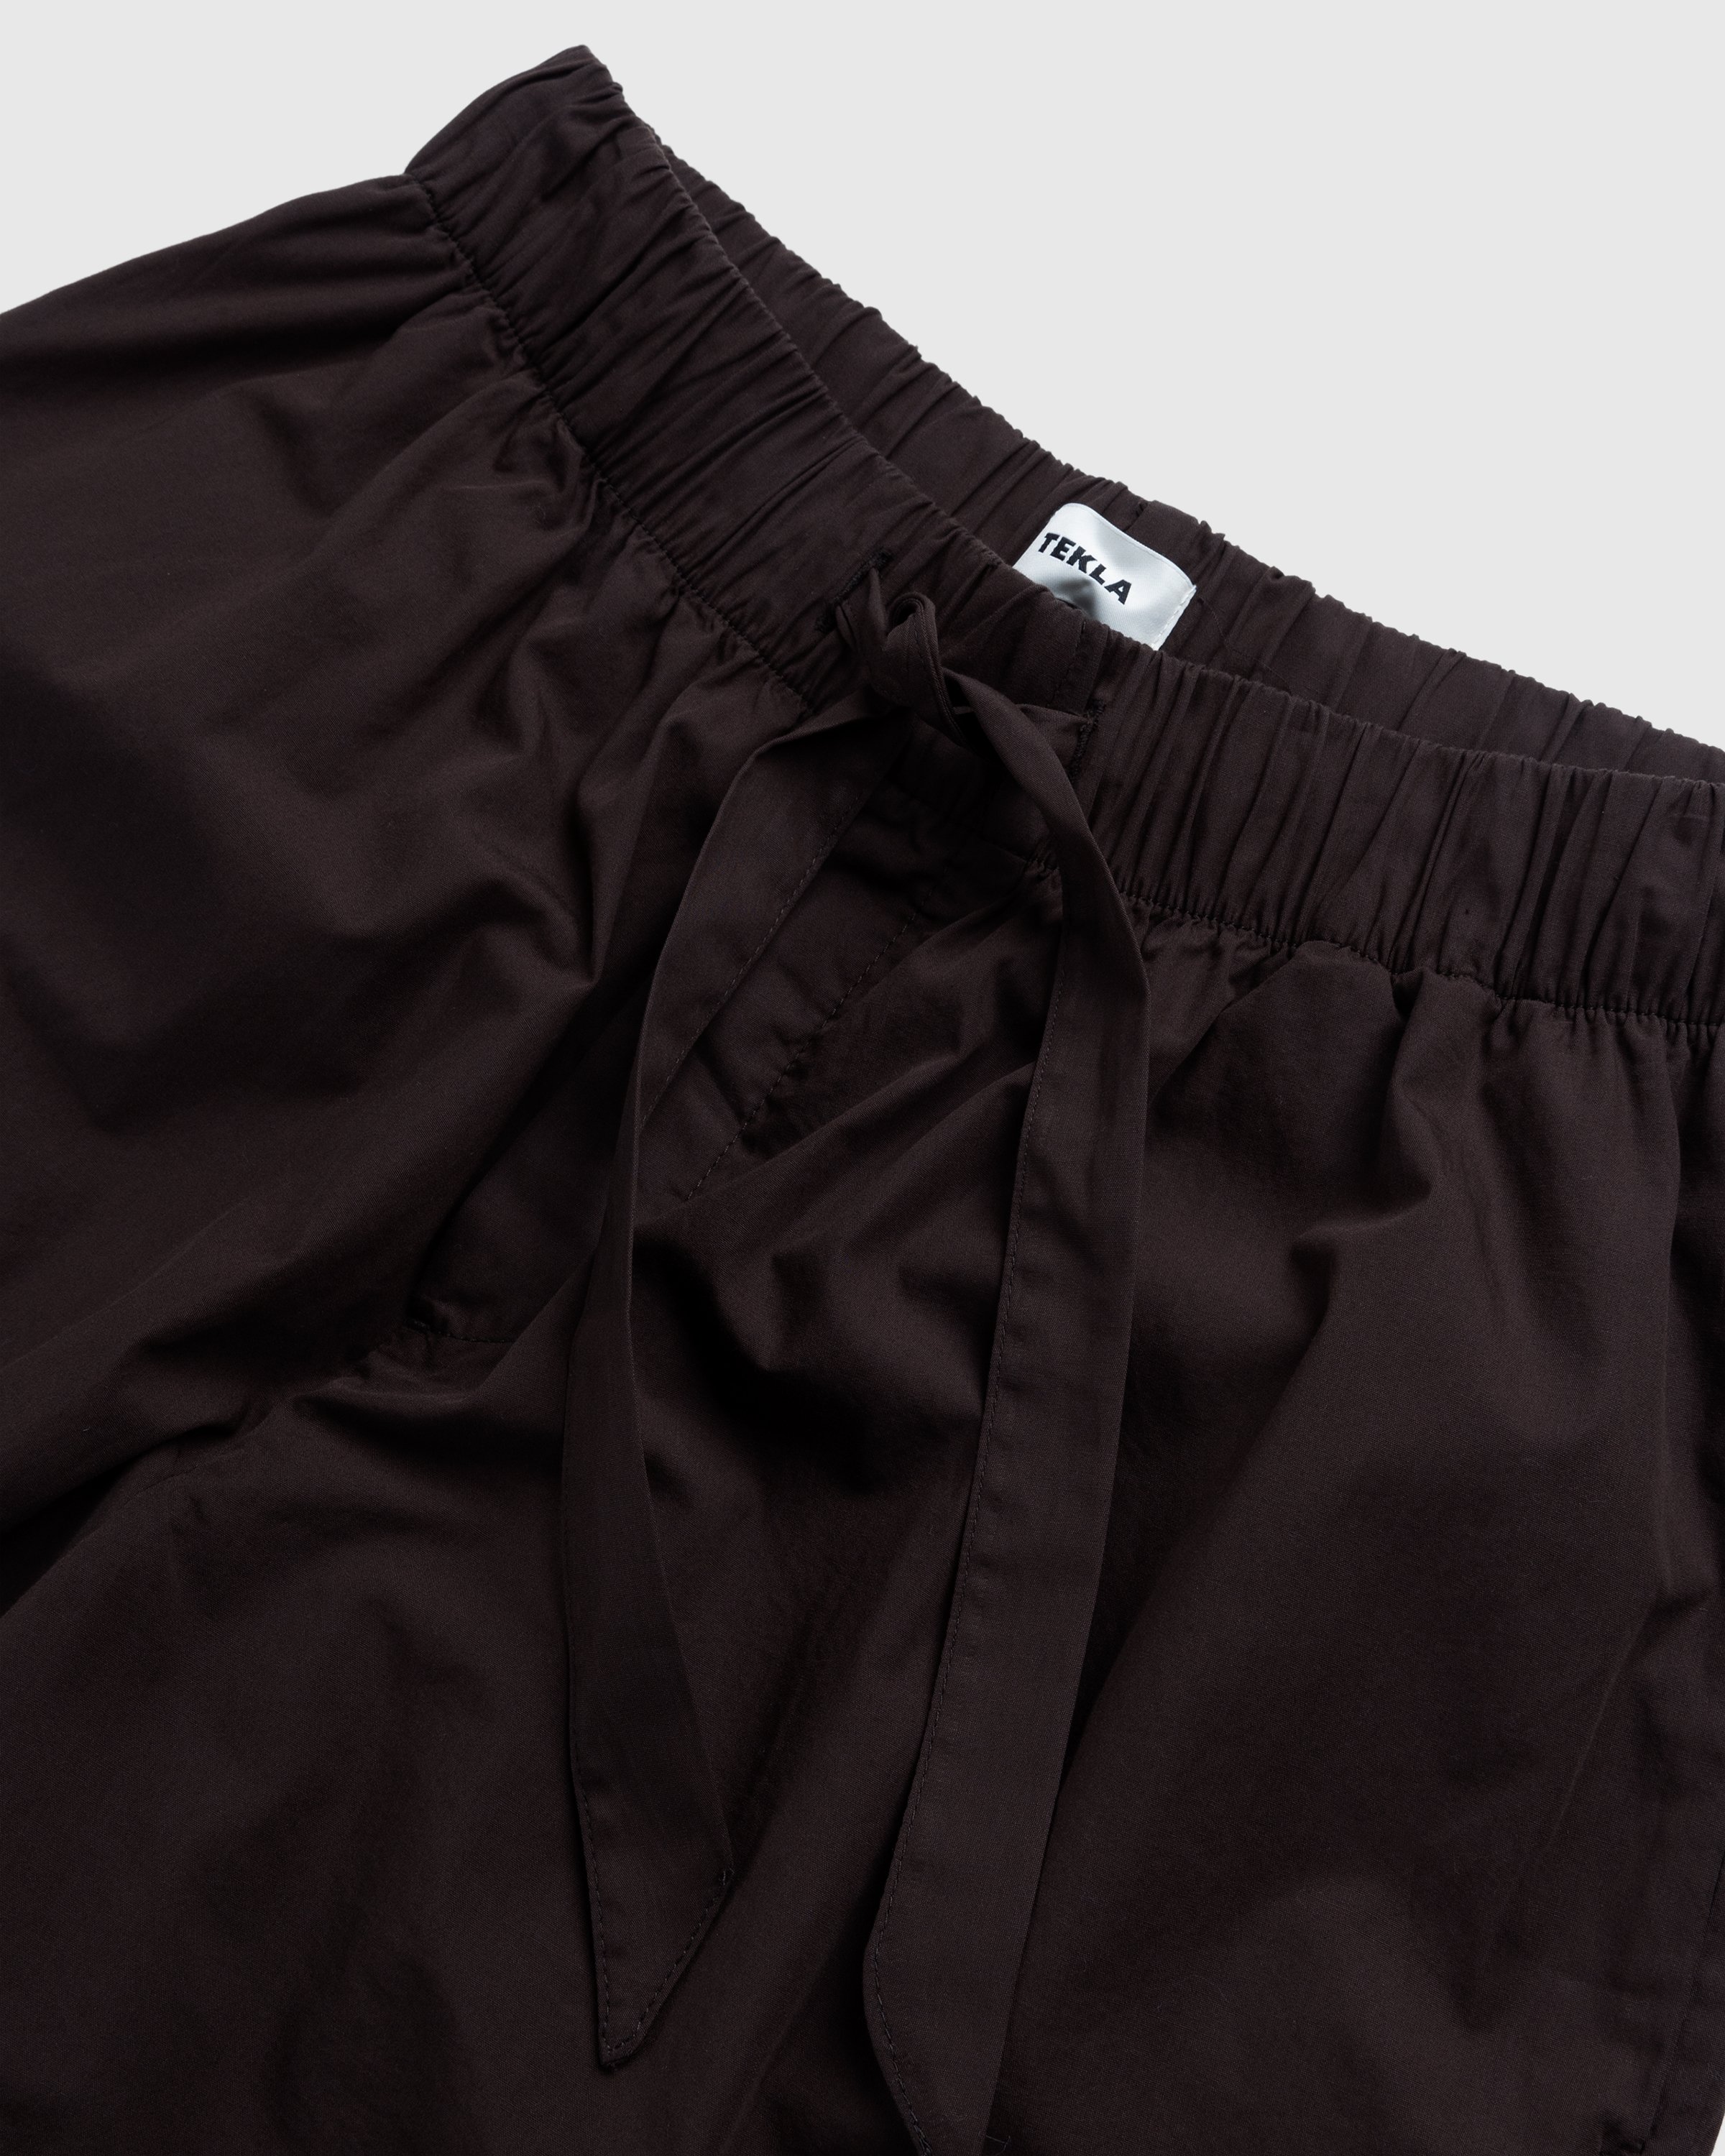 Tekla - Cotton Poplin Pyjamas Shorts Coffee - Clothing - Brown - Image 3